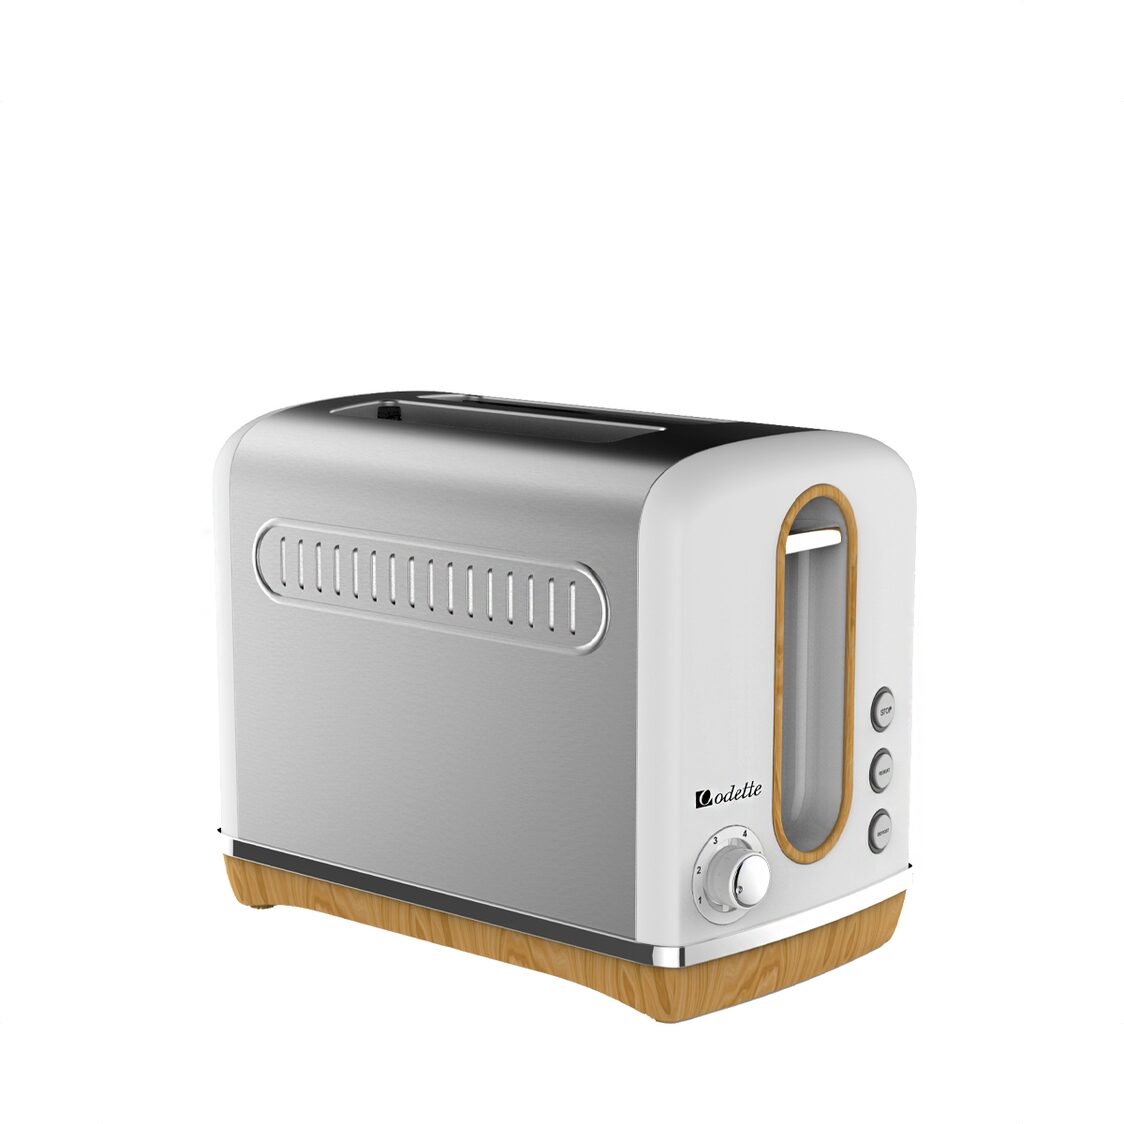 Odette 2 Slice Retro Design Toaster White